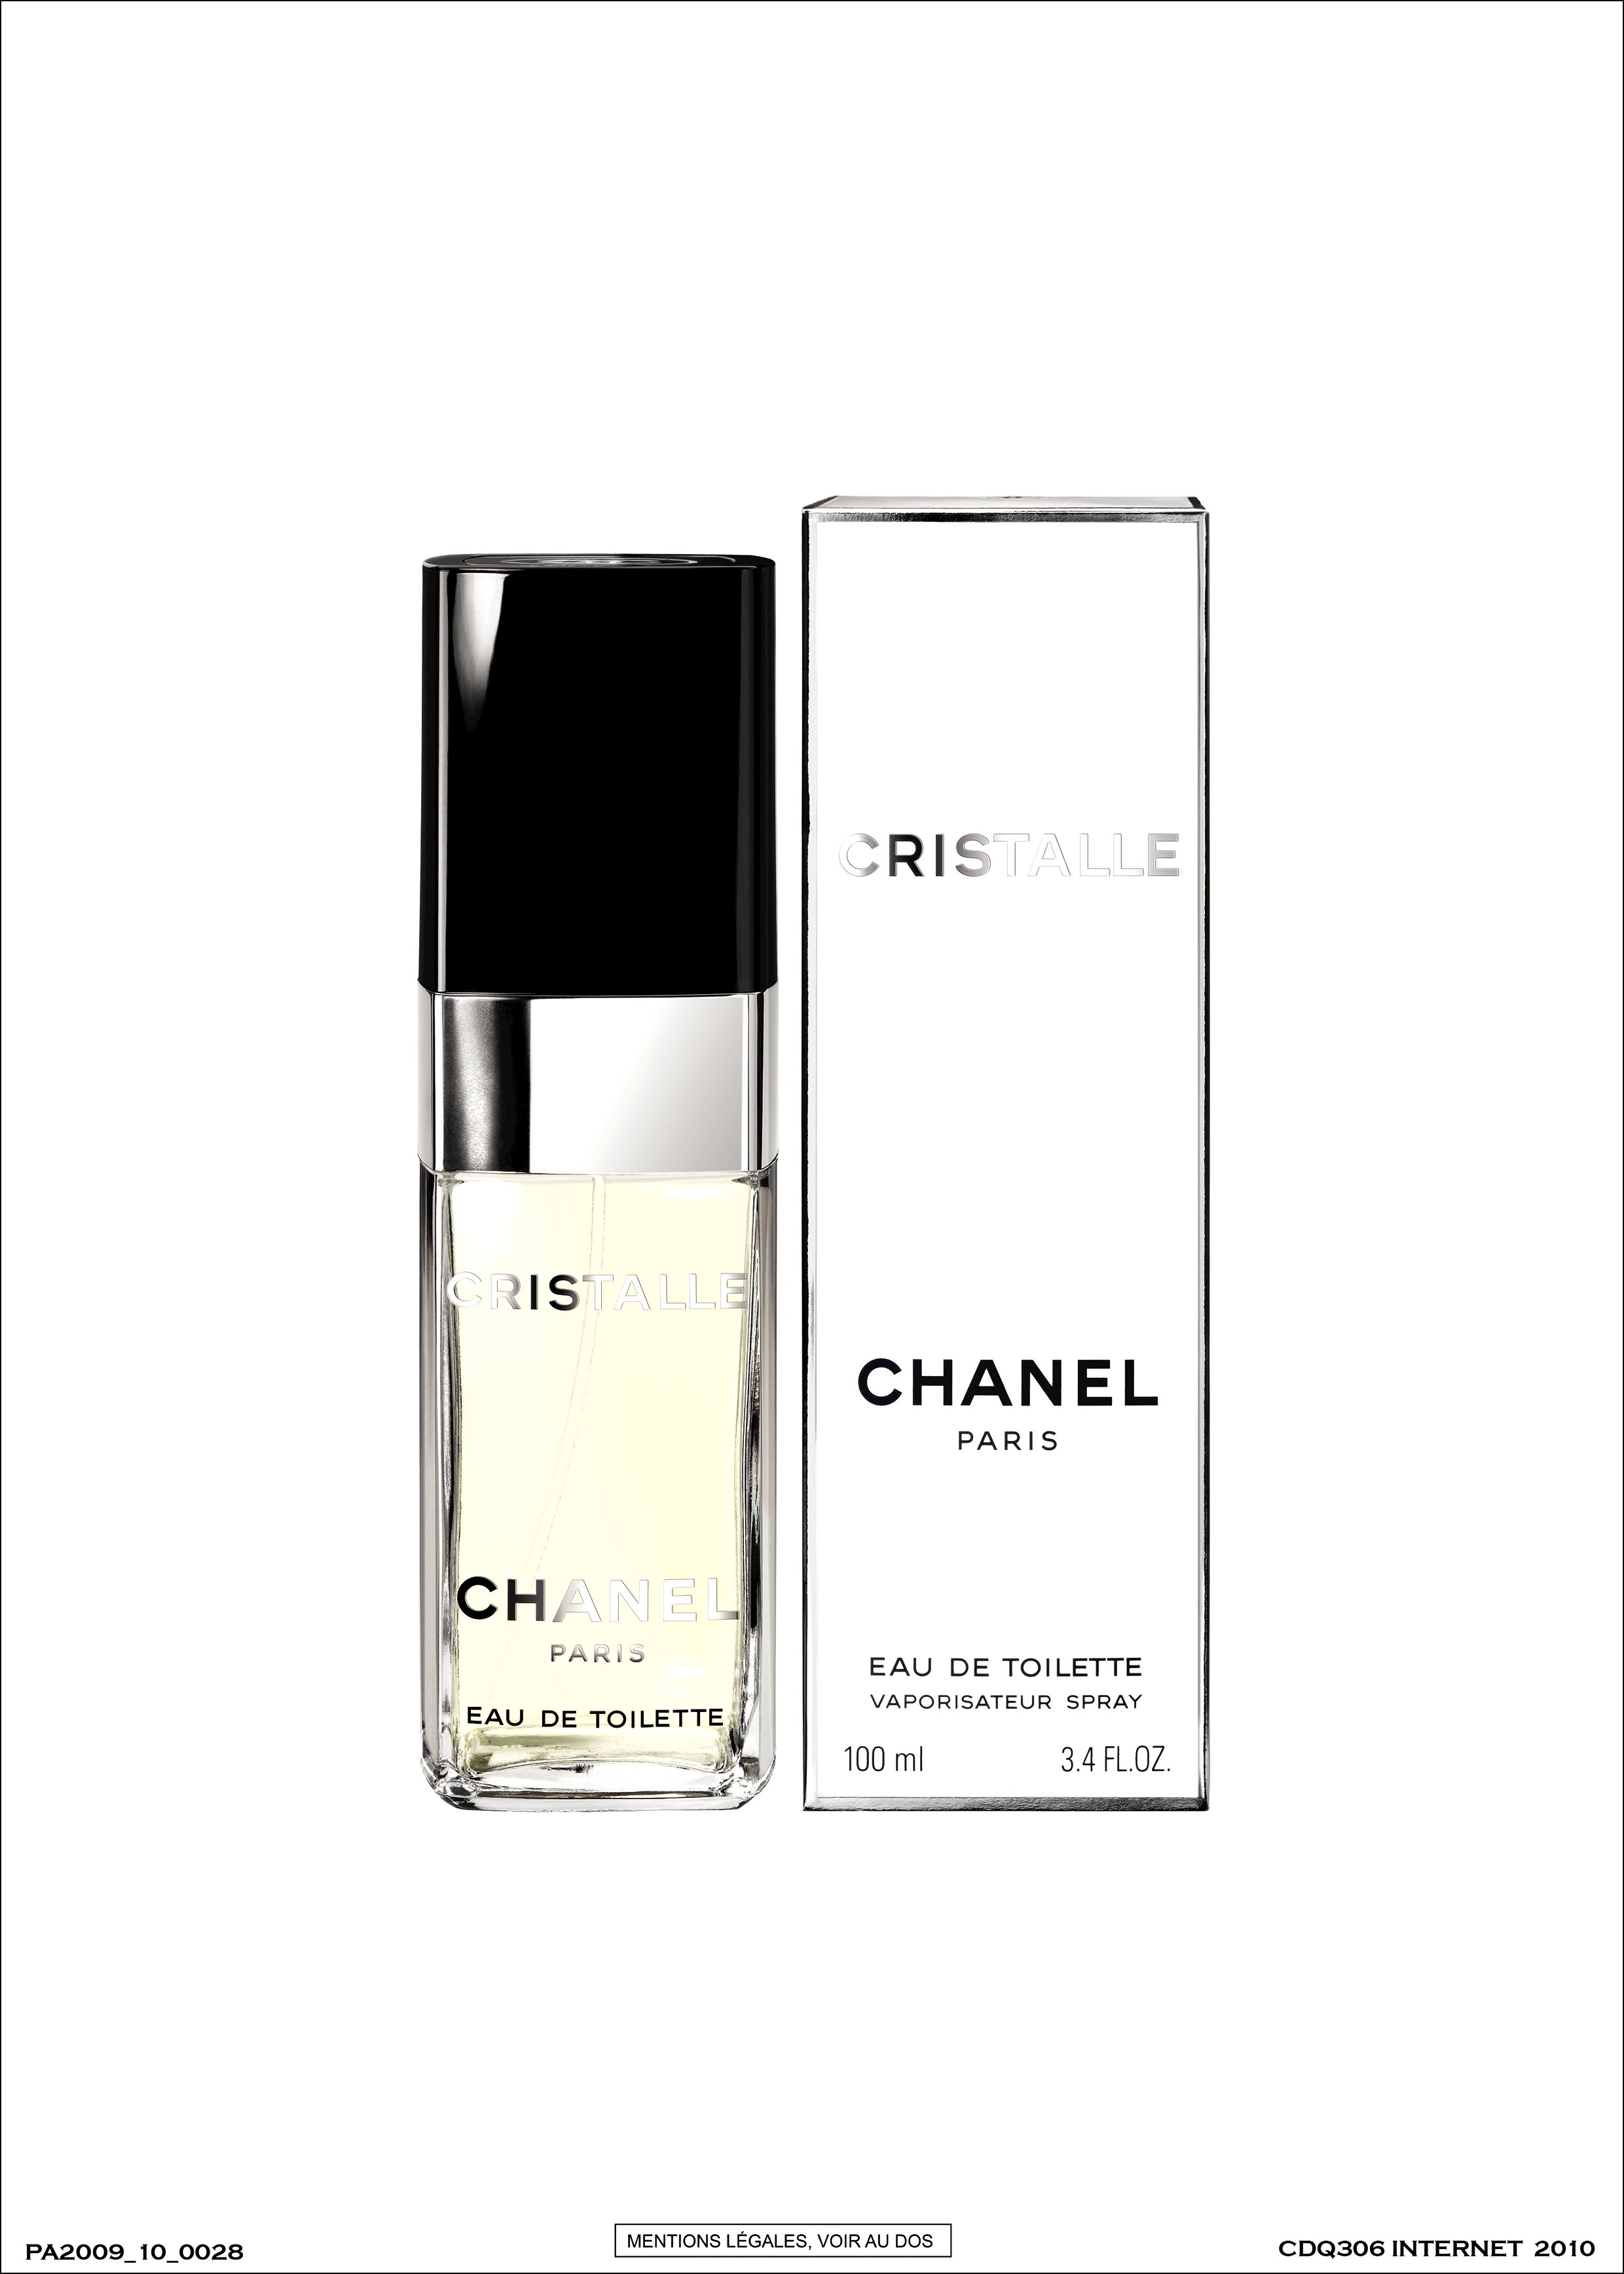 Chanel Cristalle, Eau de Toilette